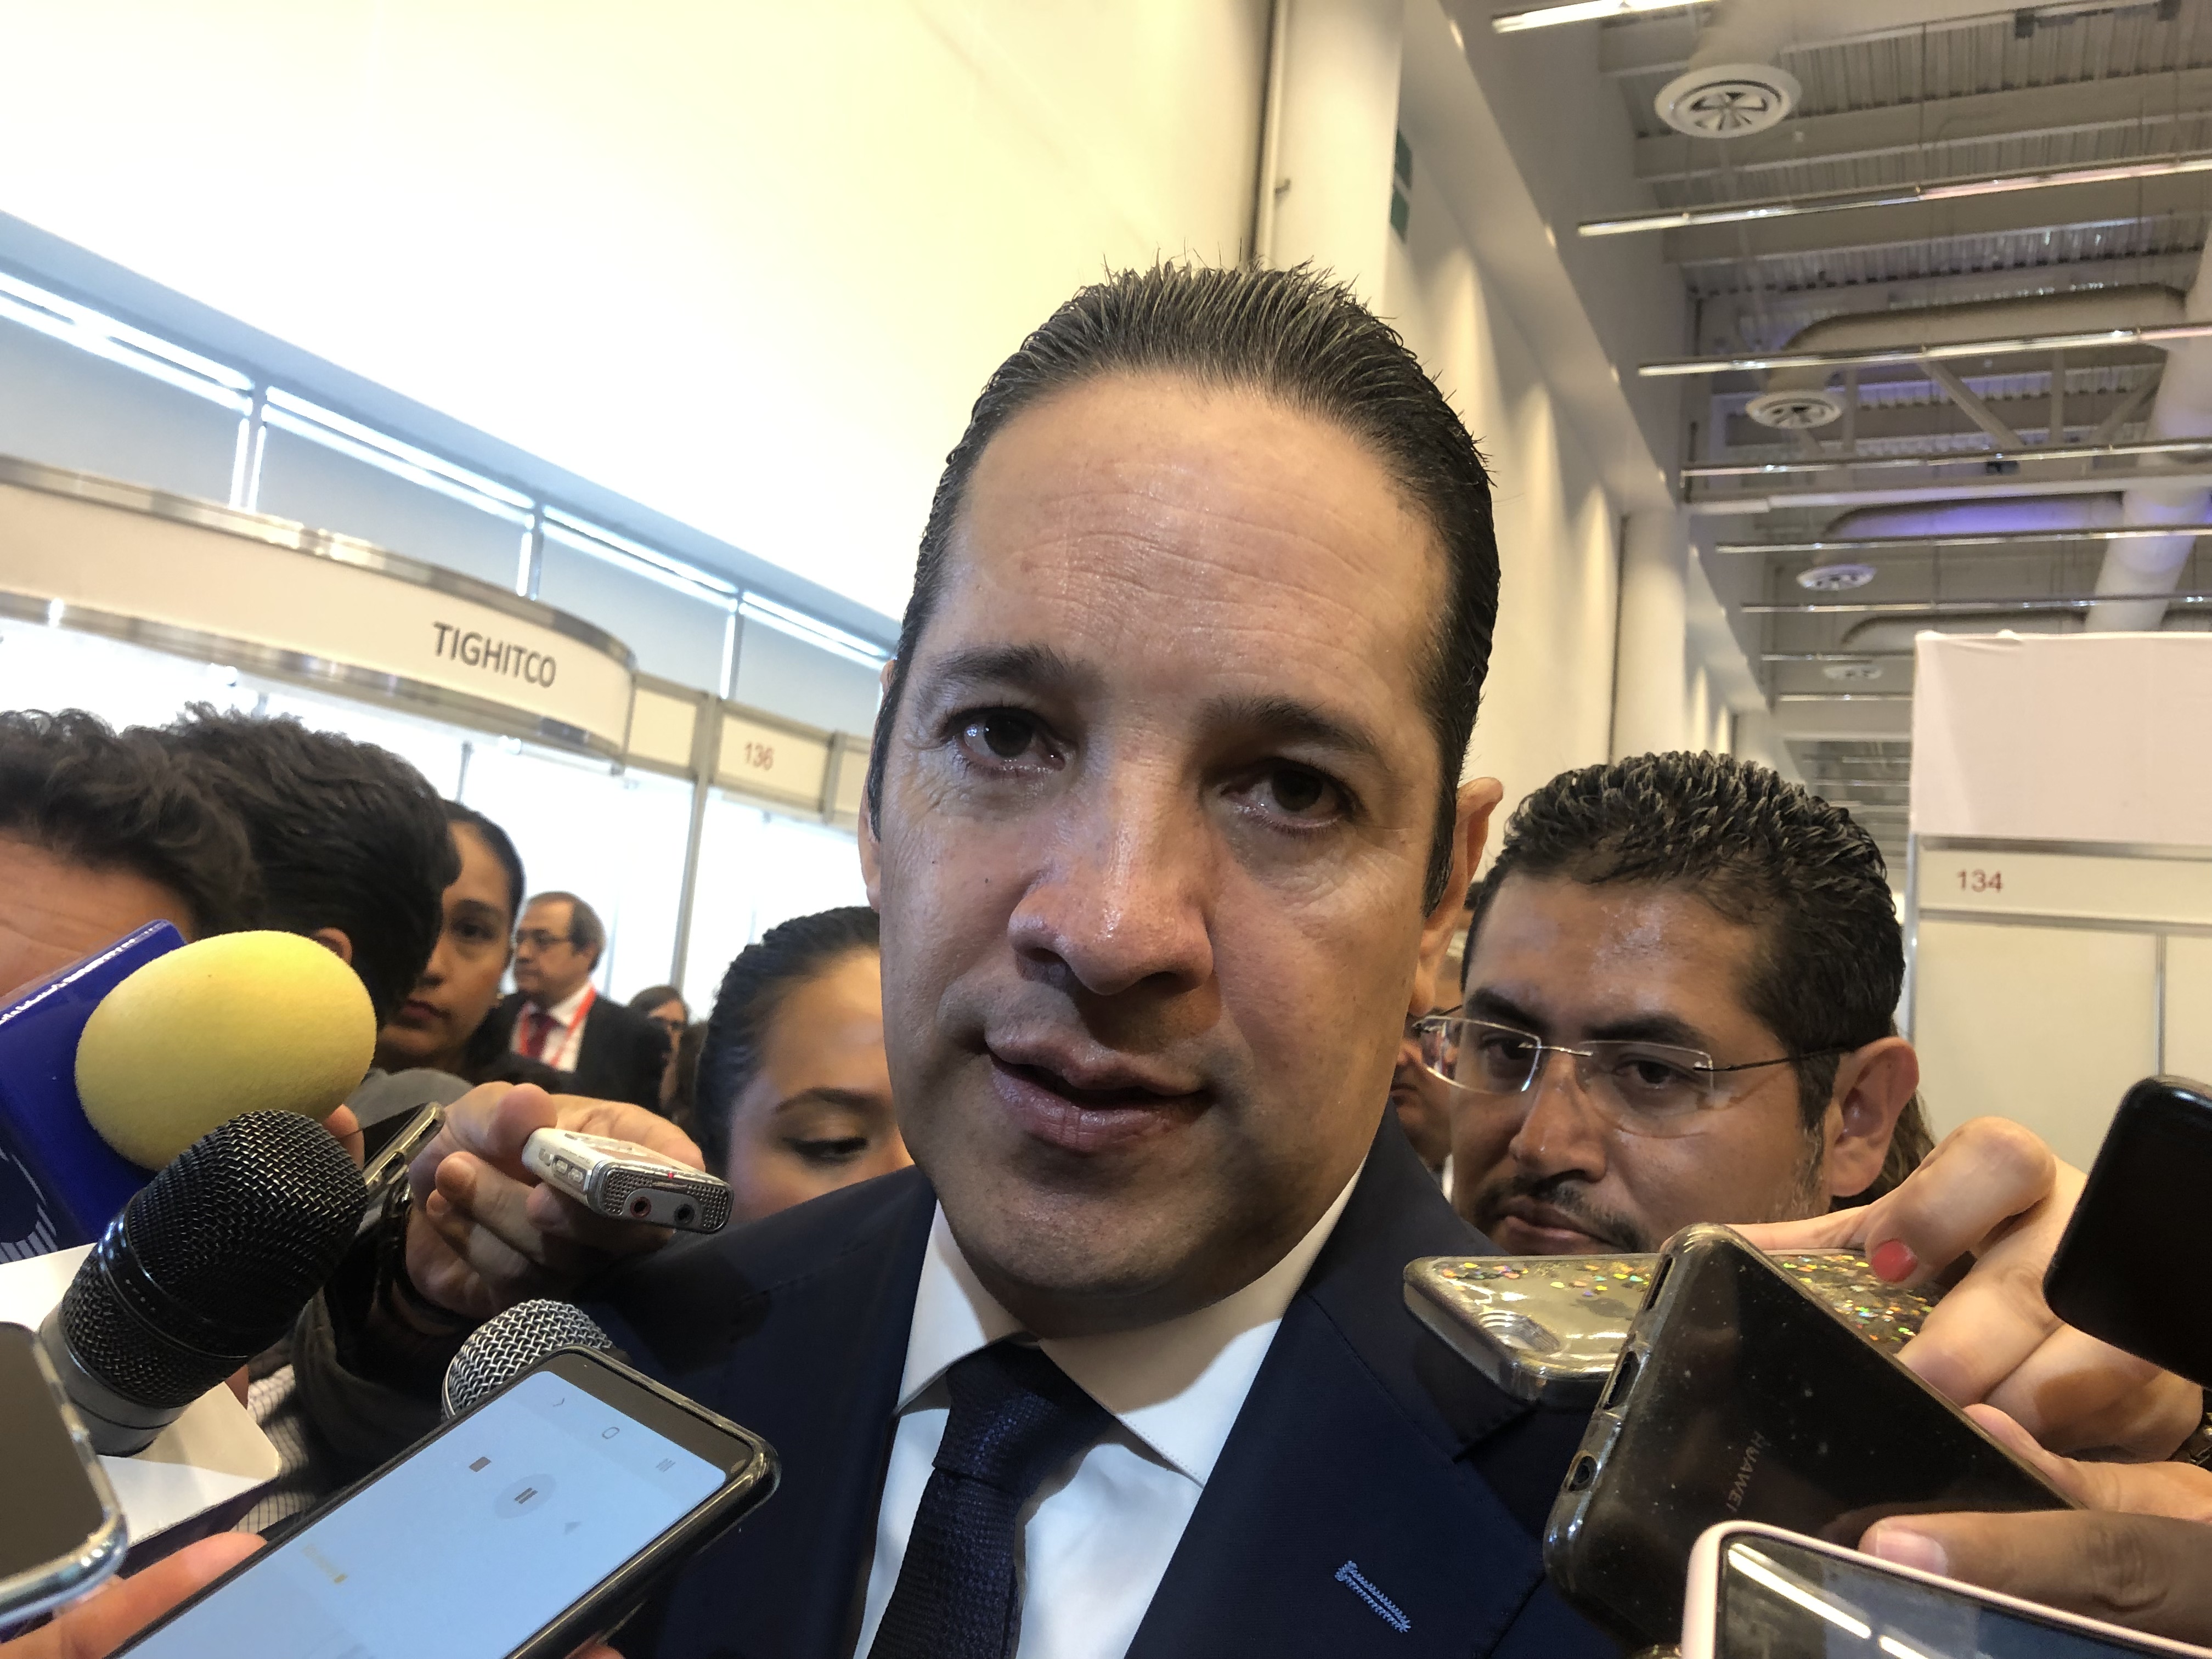  Confirma FDS que Colón donará 15 hectáreas a efectivos de la Fuerza Aérea Mexicana